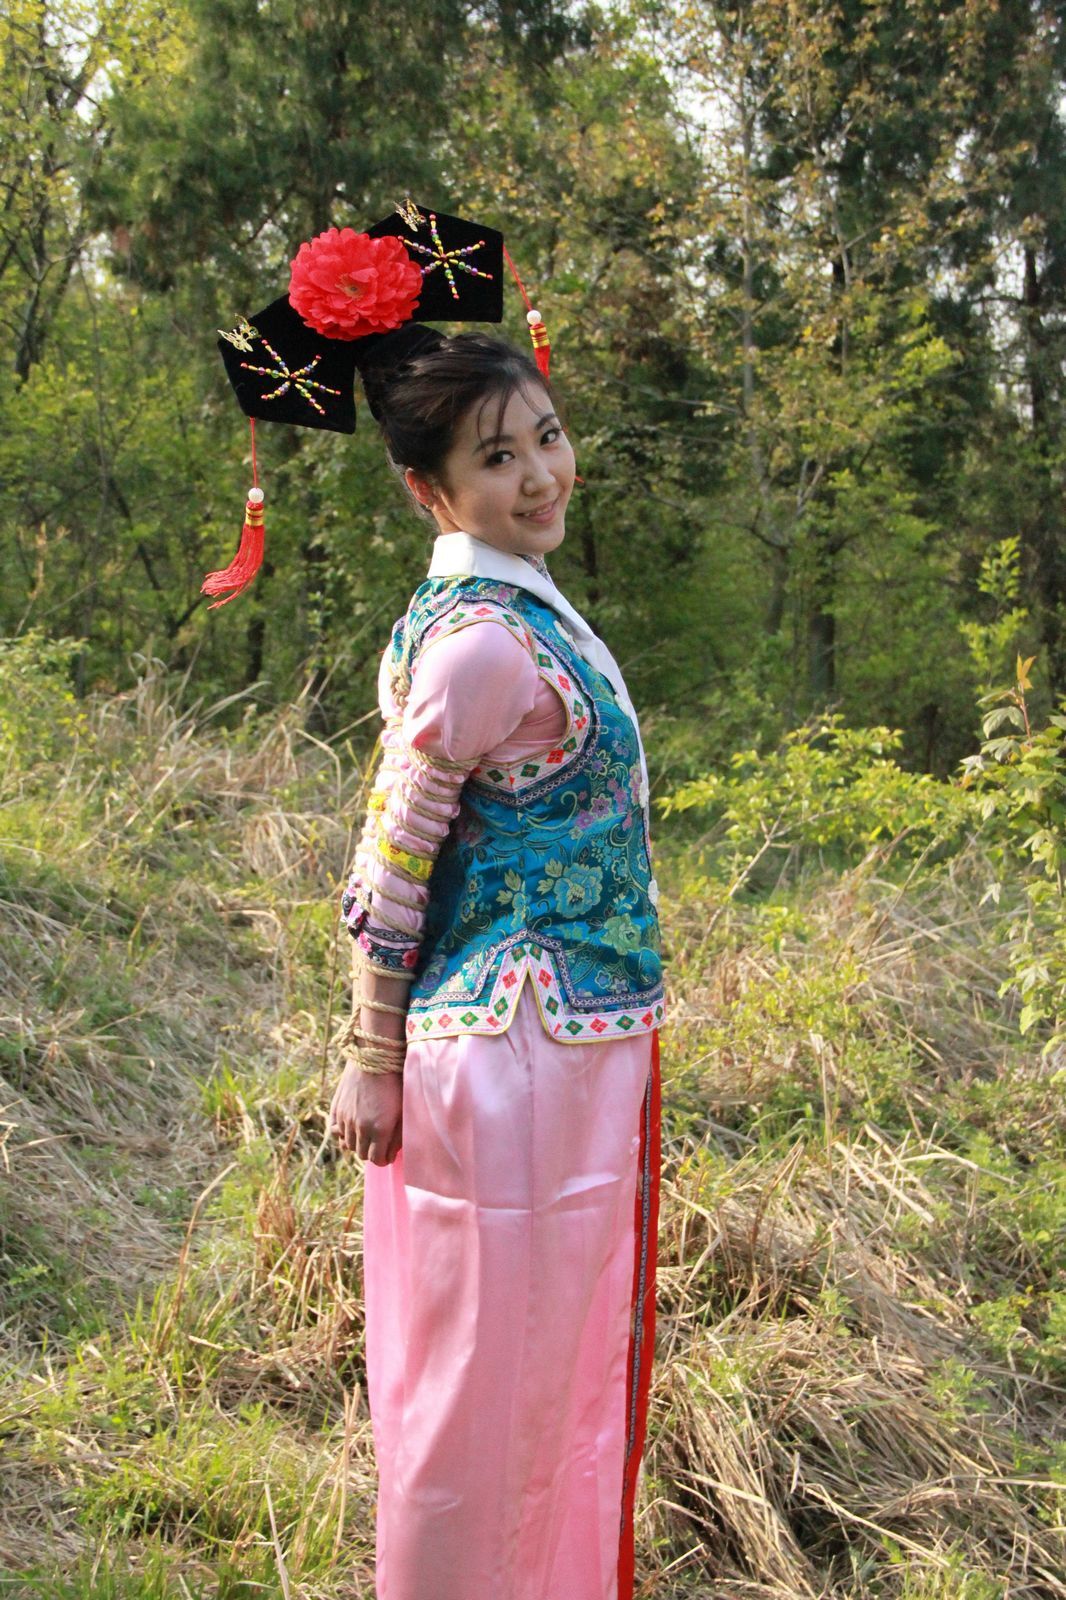 [shenyiyuan] 2010.04.24 no.017 model Tiantian, Feifei, Nana